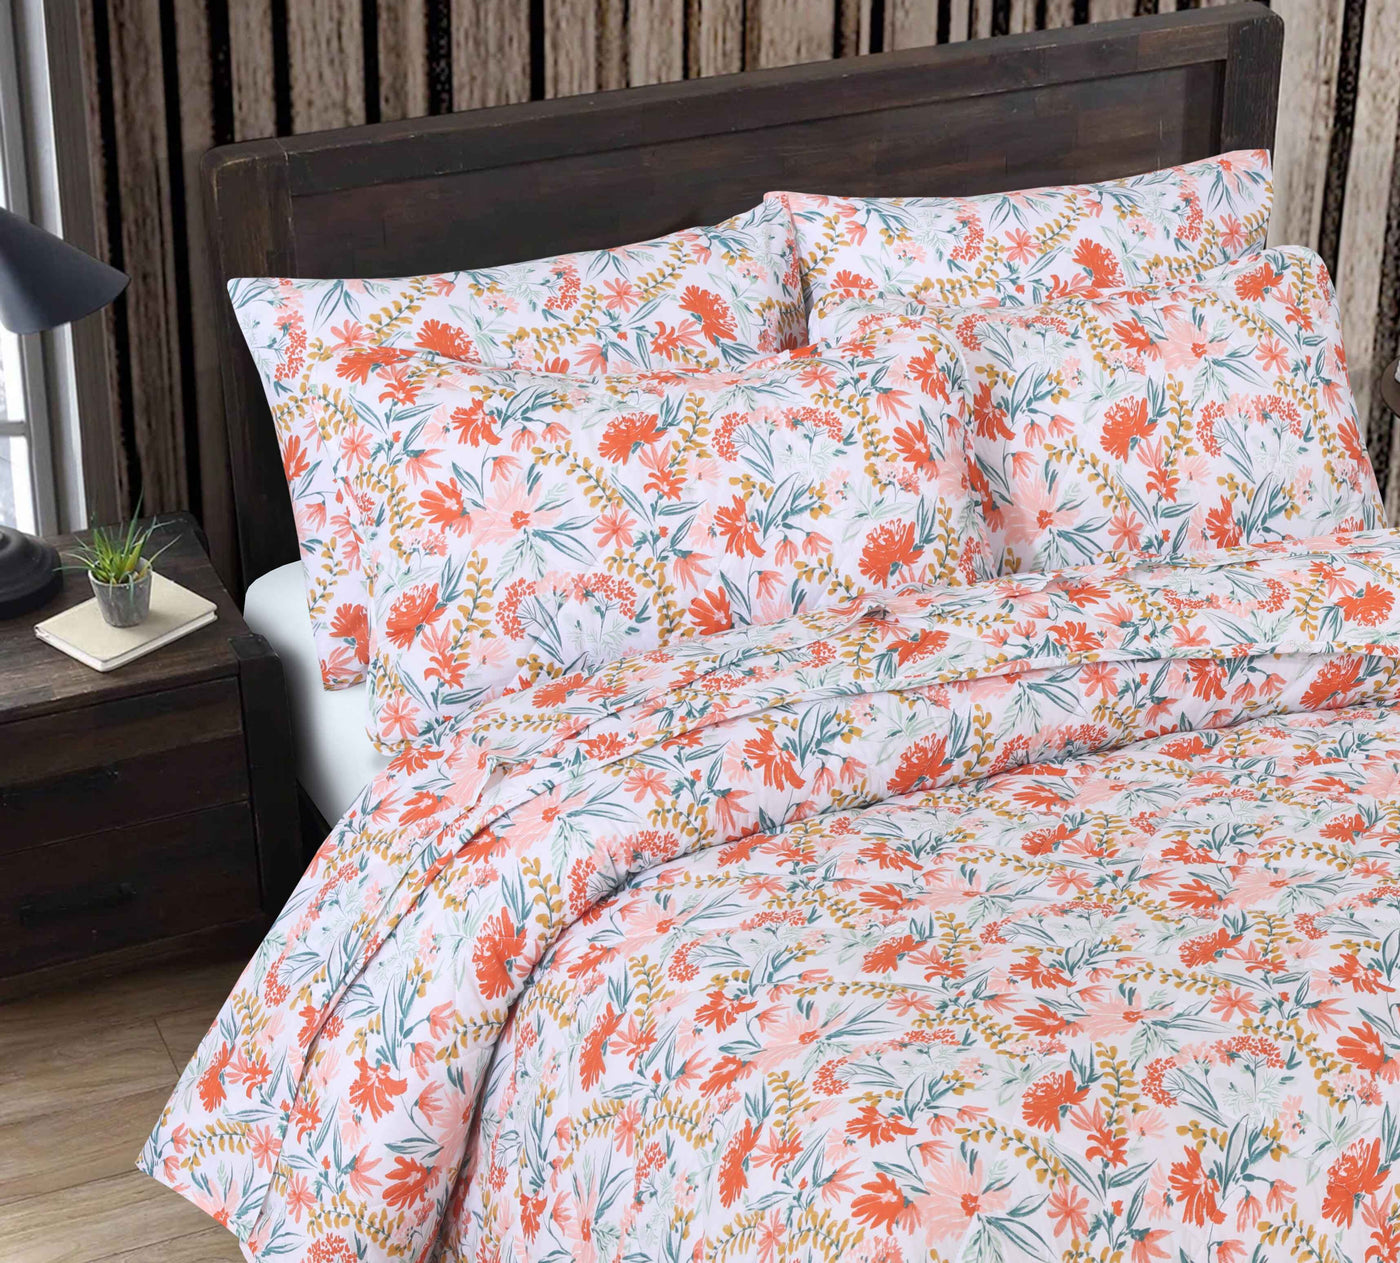 Quilted Summer Comforter 6 Pcs Set Design-3